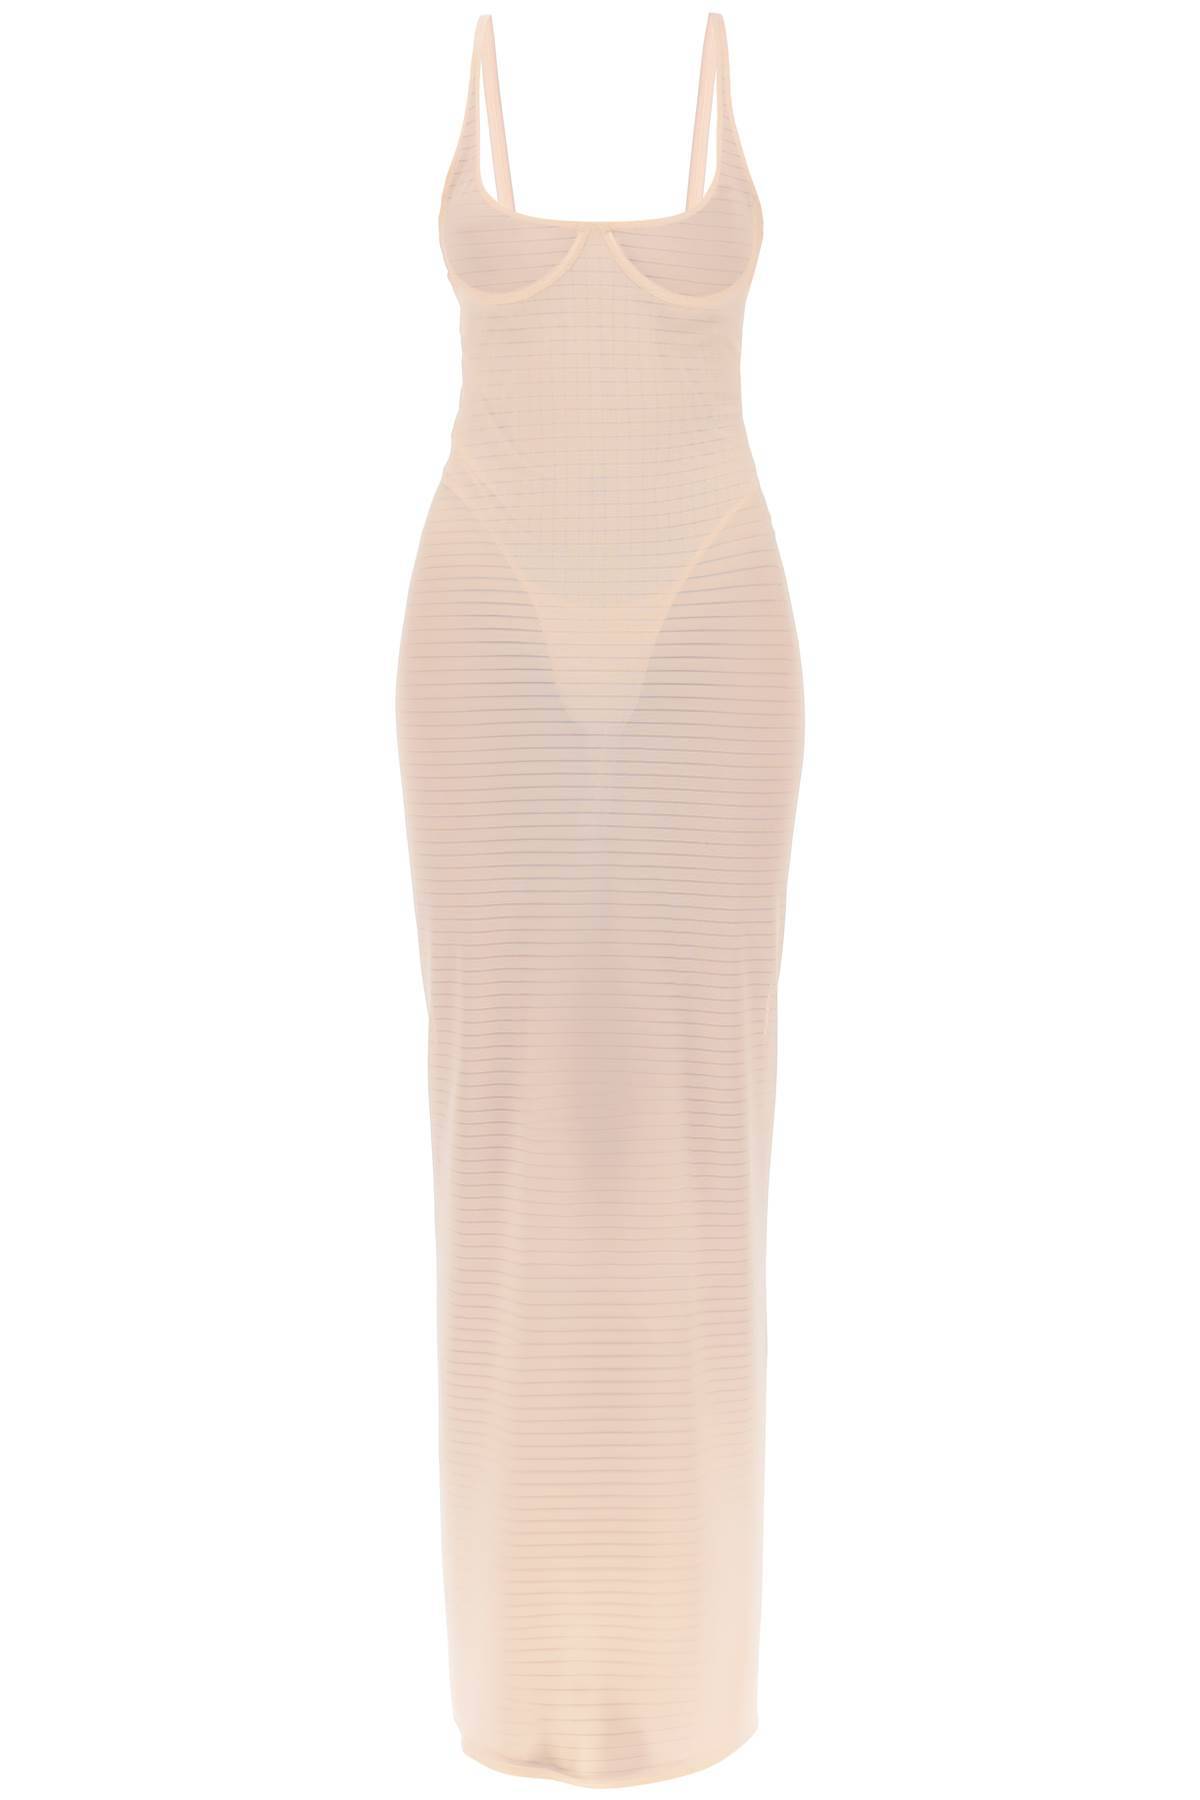 Alaïa ALAIA transparent dress with integrated bodysuit